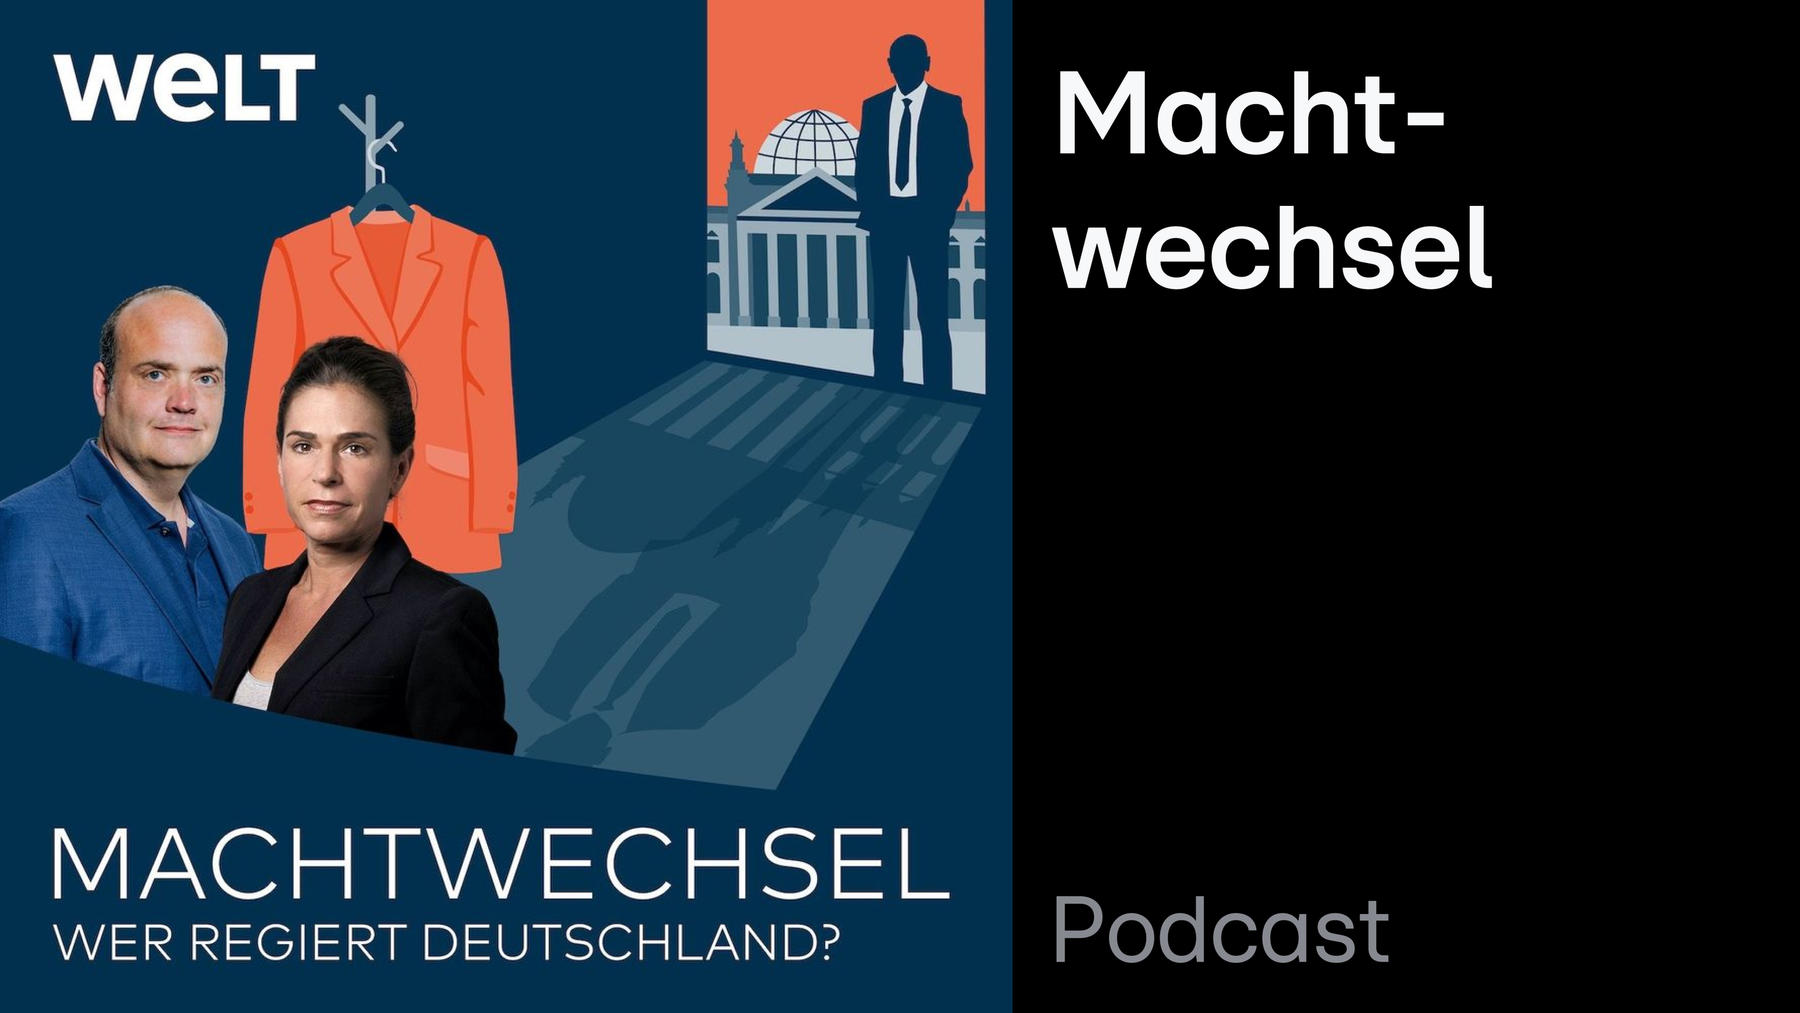 Podcast: Machtwechsel